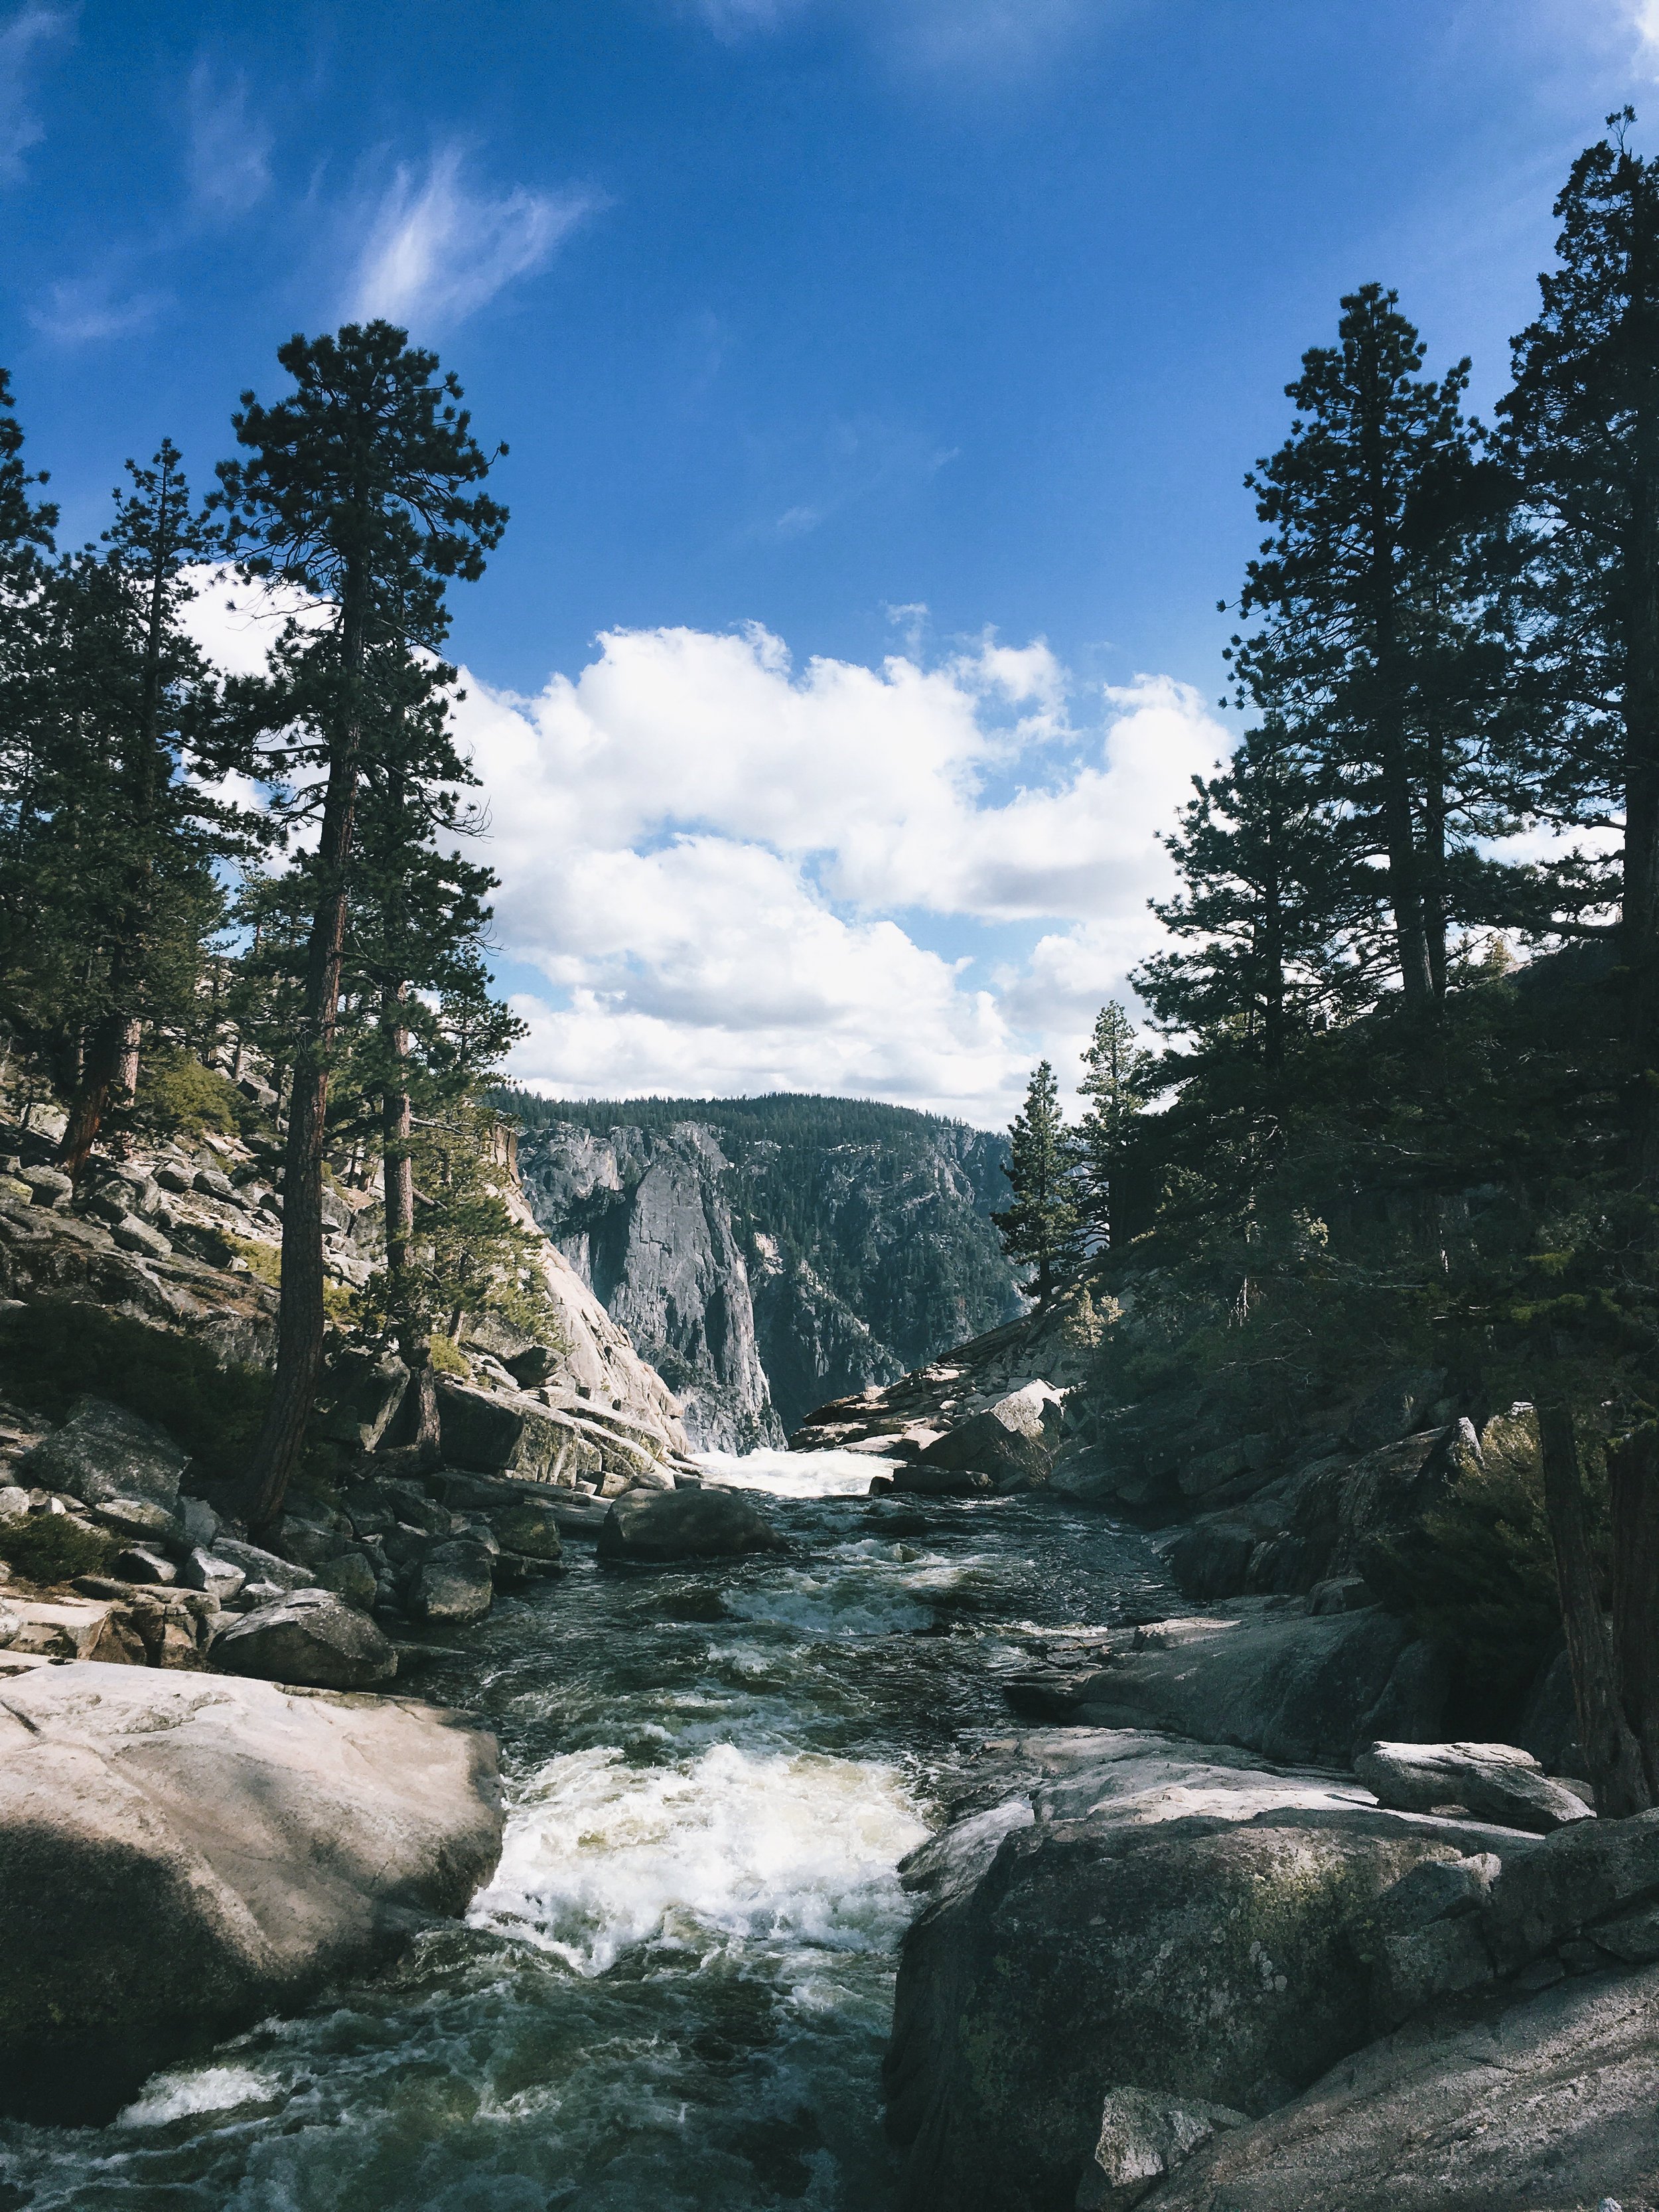  Top of Upper Yosemite Falls 